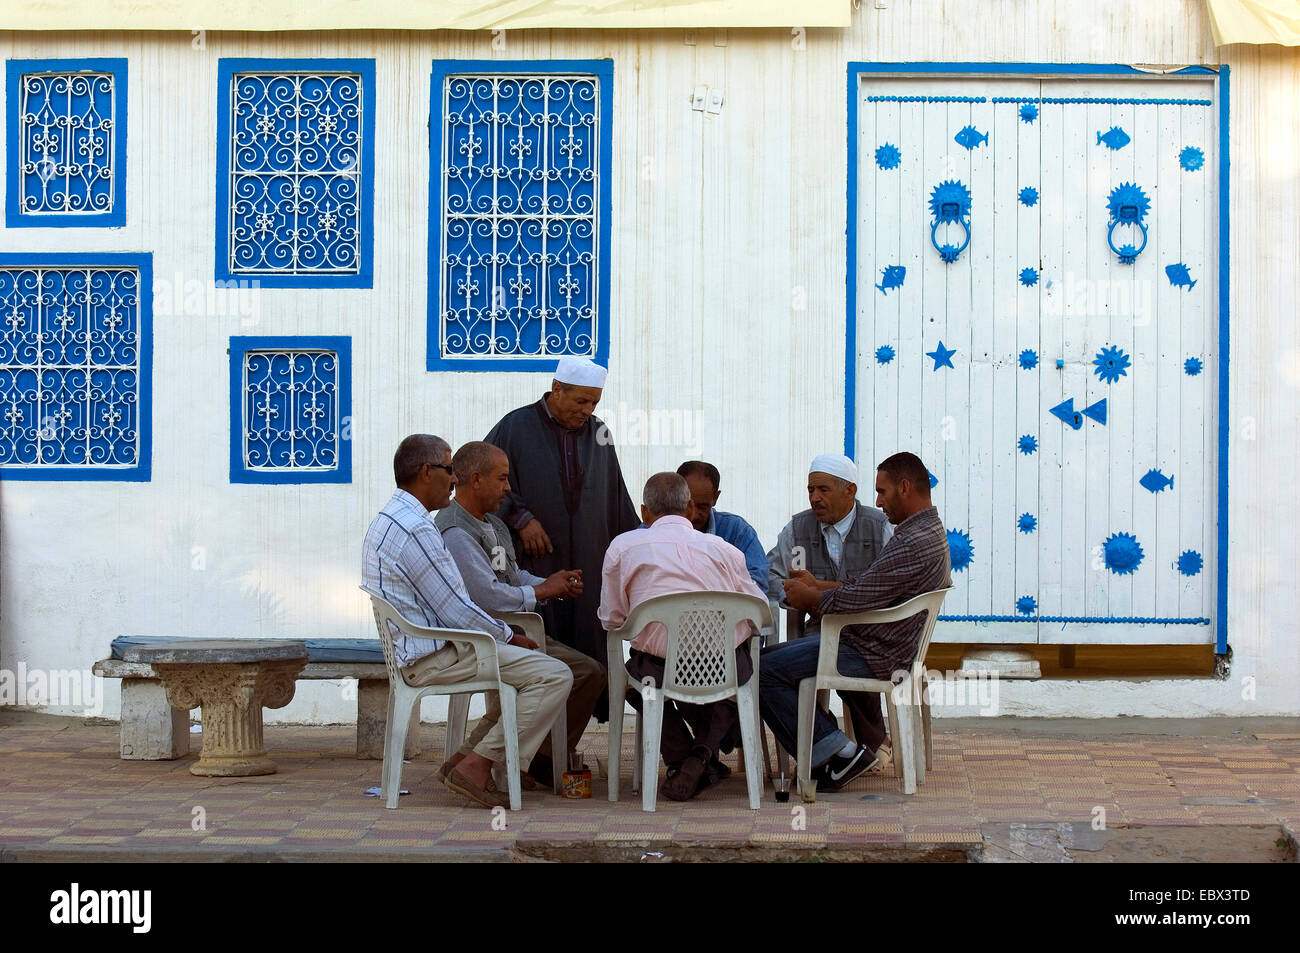 Les hommes assis à une table sur le trottoir, Tunisie, domino jeu Djerba Banque D'Images